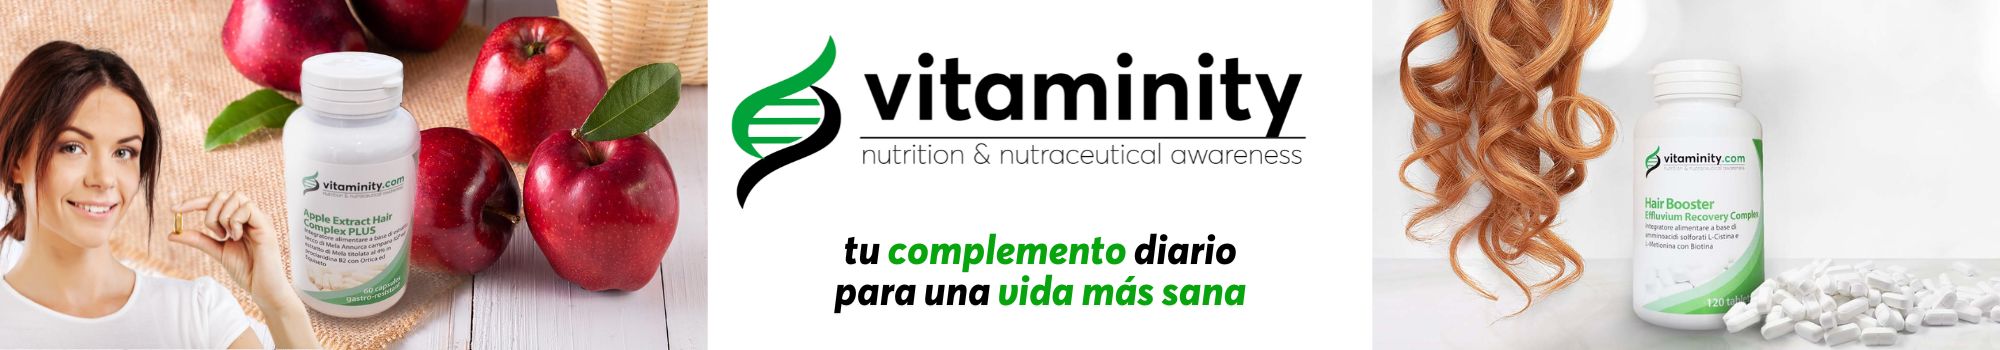 vitaminity complementos alimenticios